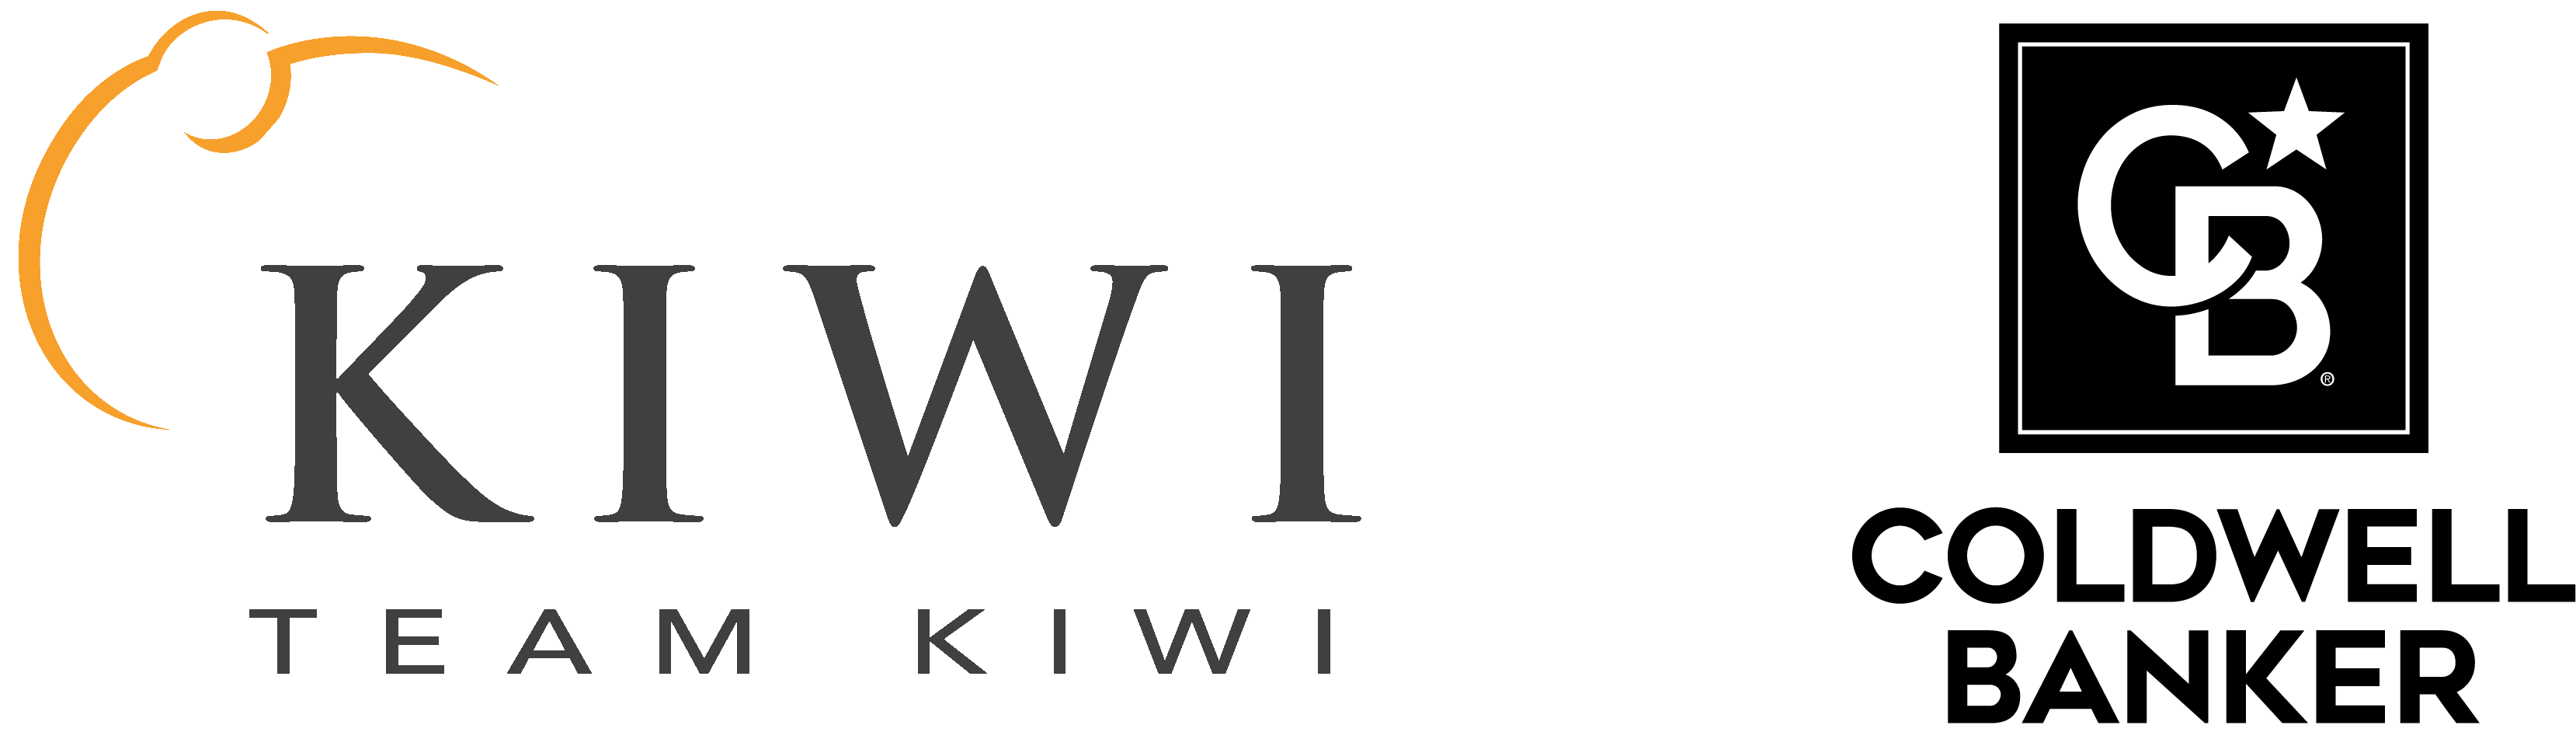 Team Kiwi